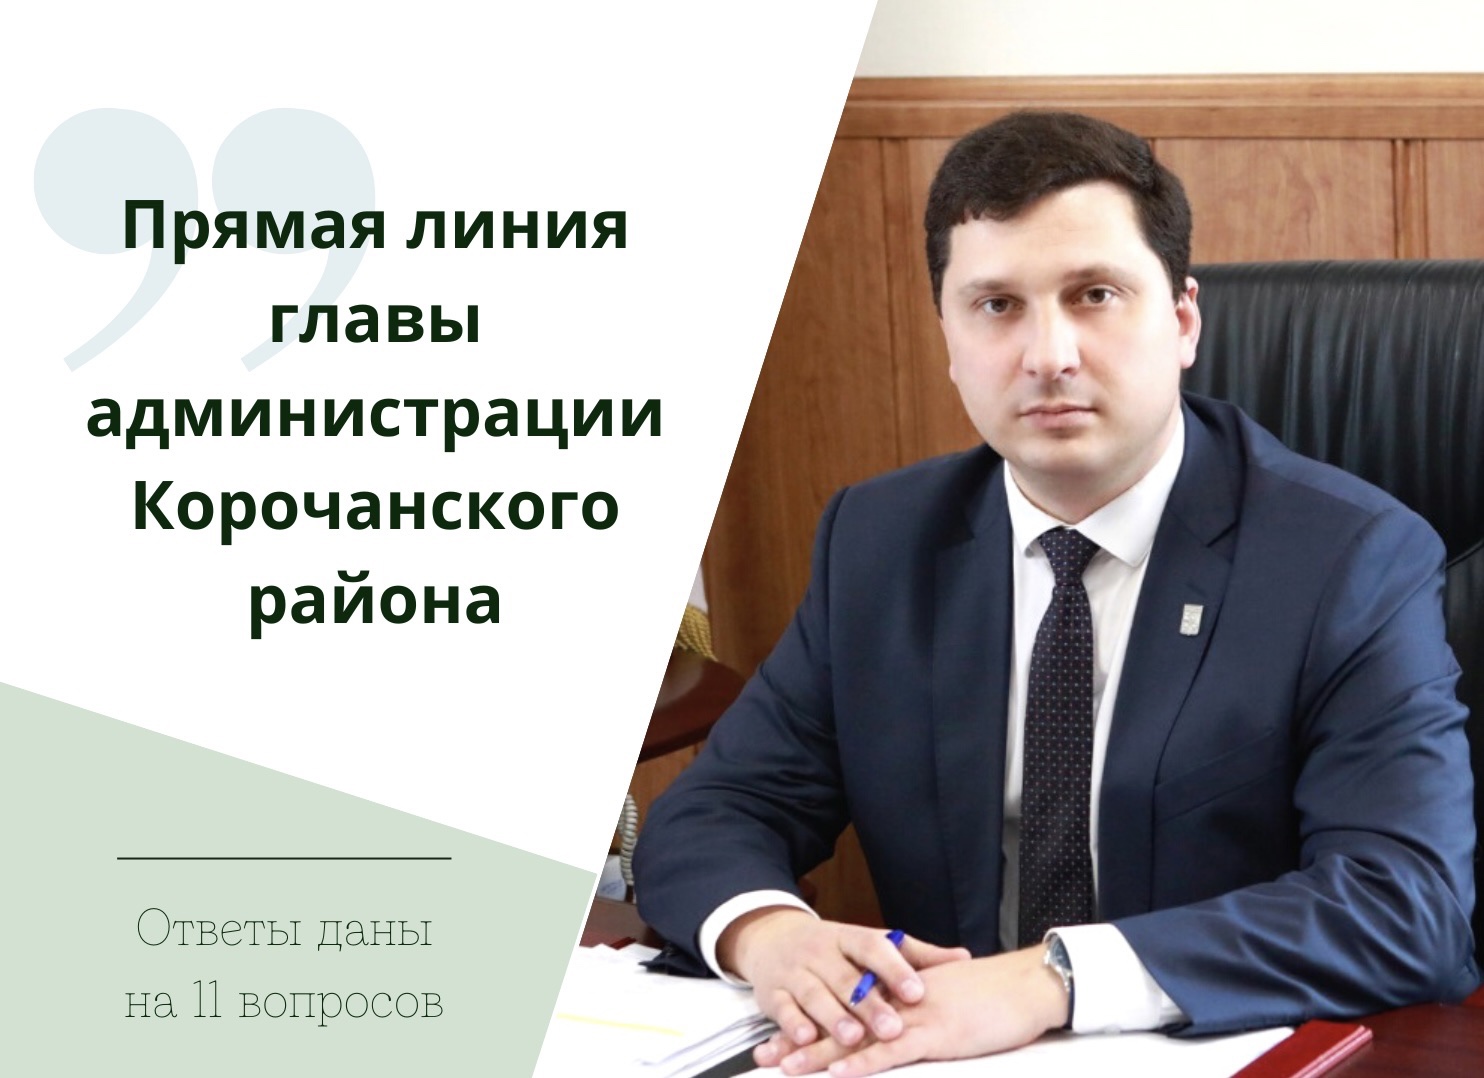 11 вопросов поступило на прямую линию главы администрации района Николая Нестерова.